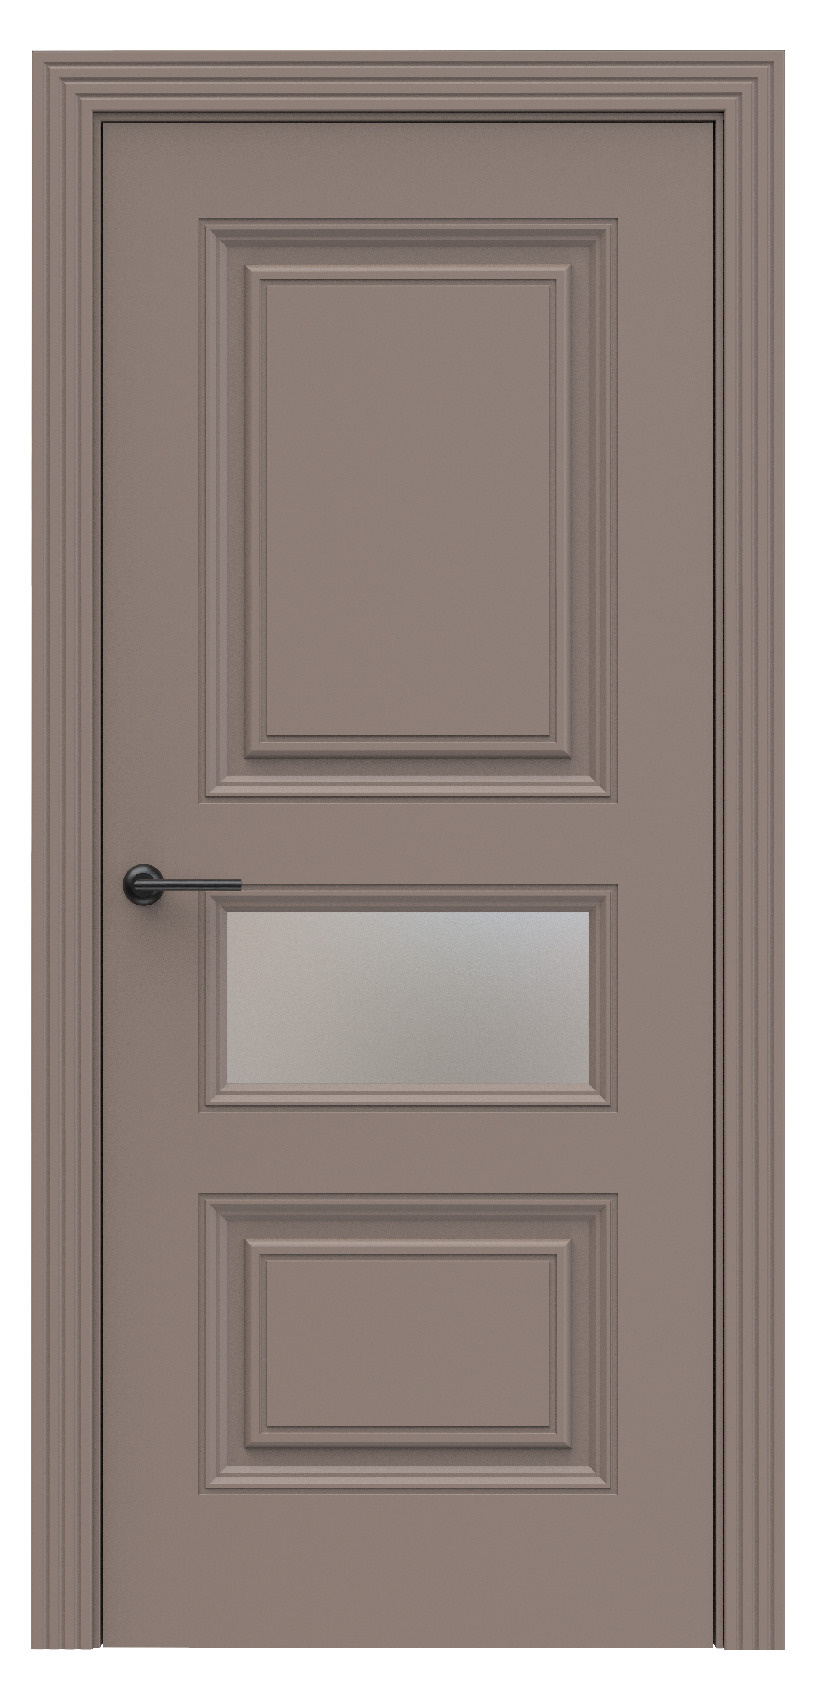 Questdoors Межкомнатная дверь QB6, арт. 17907 - фото №1